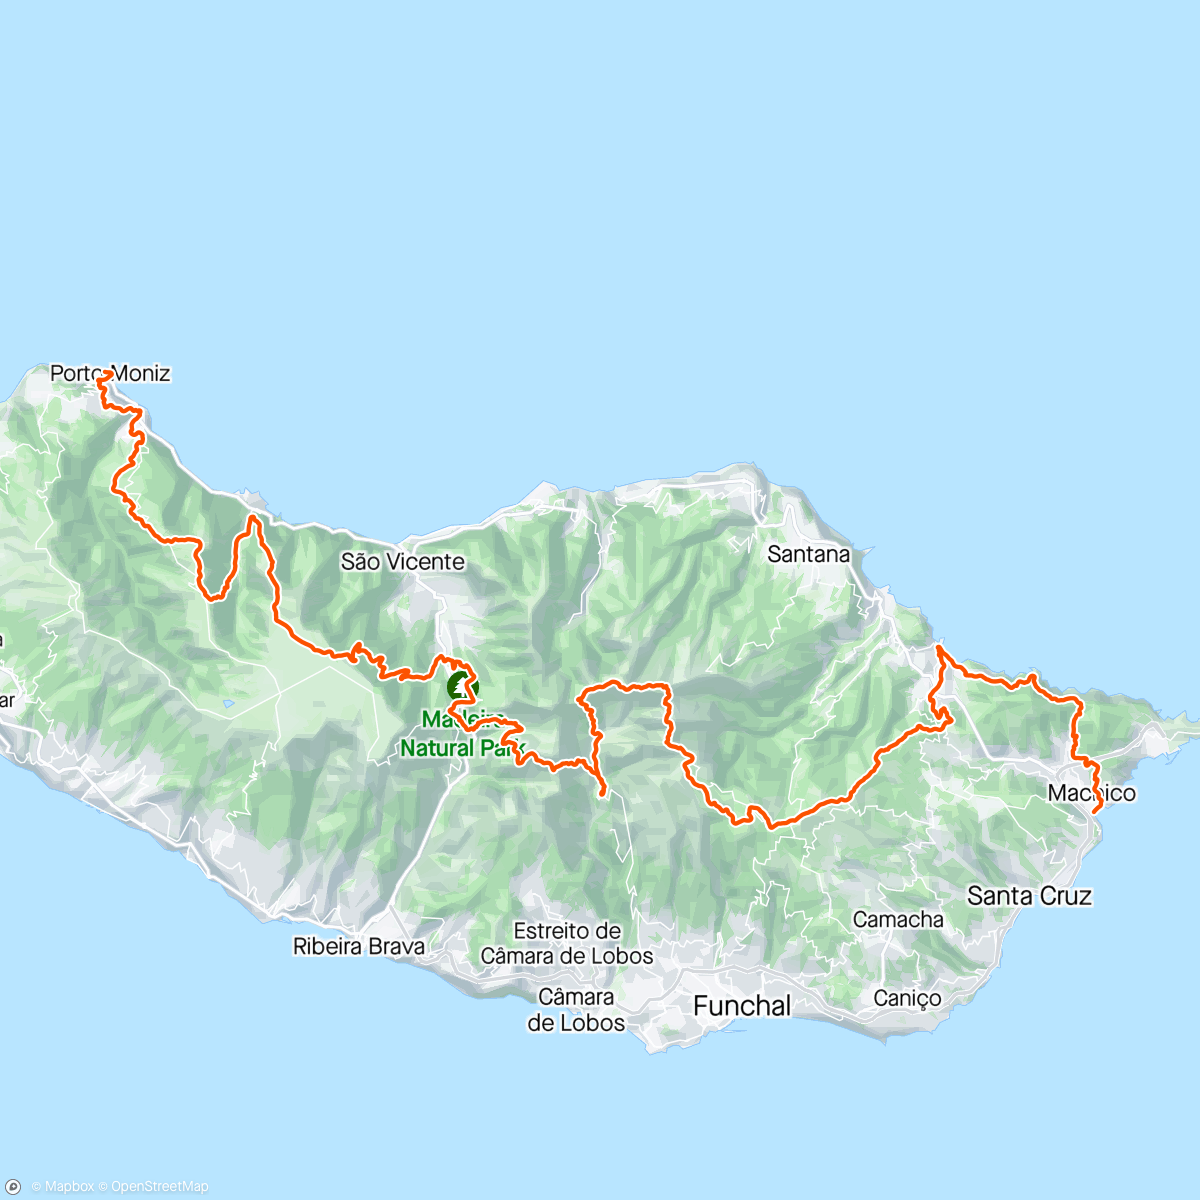 「MIUT 115K Madeira. 23rd」活動的地圖